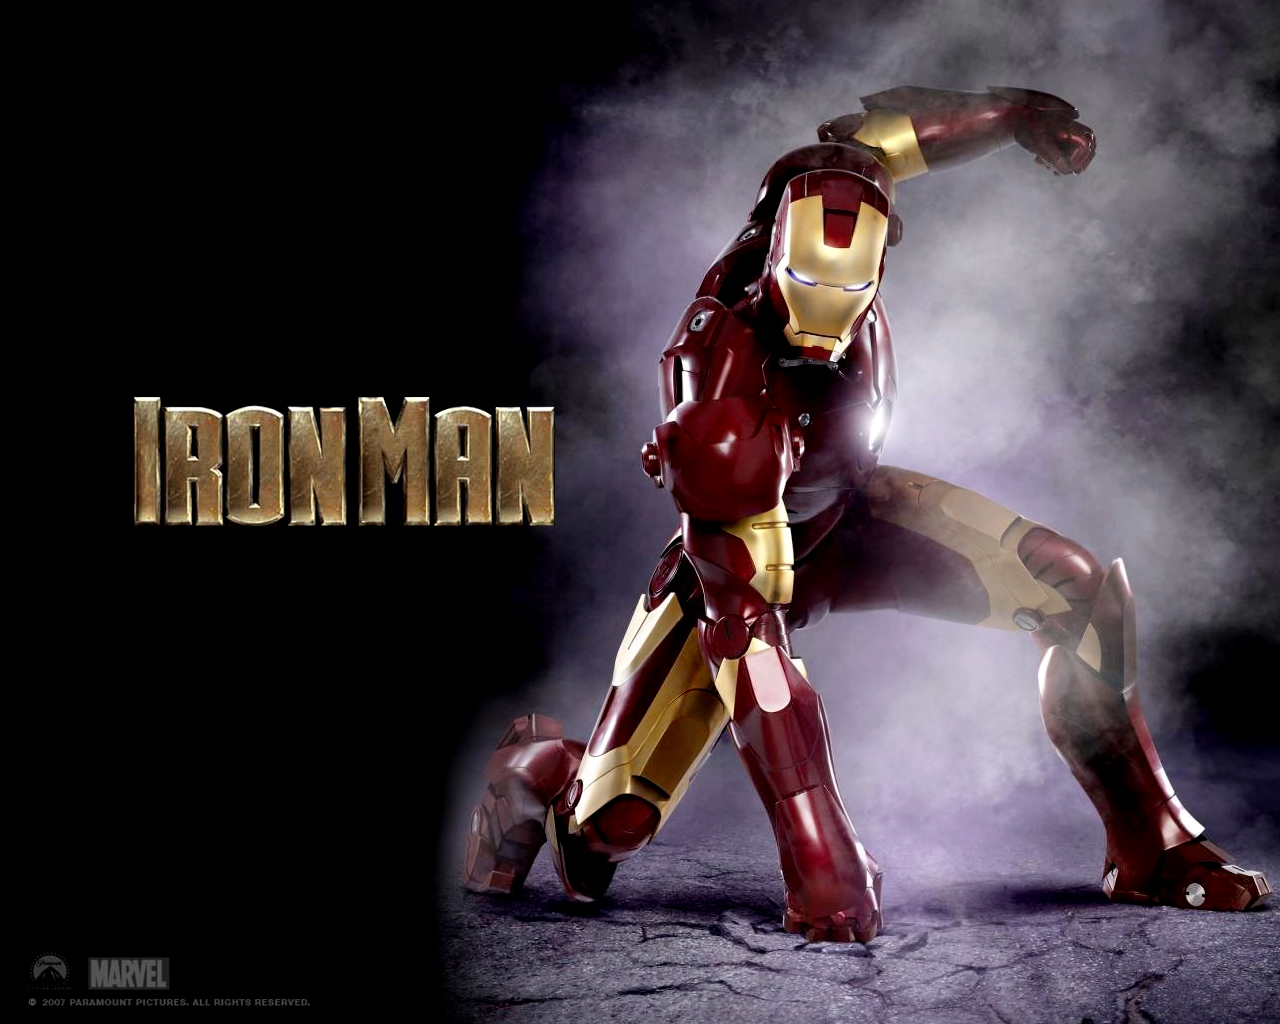 Iron Man 2 Hình Nền - Iron Man 2 The Movie Hình Nền (12096475) - Fanpop